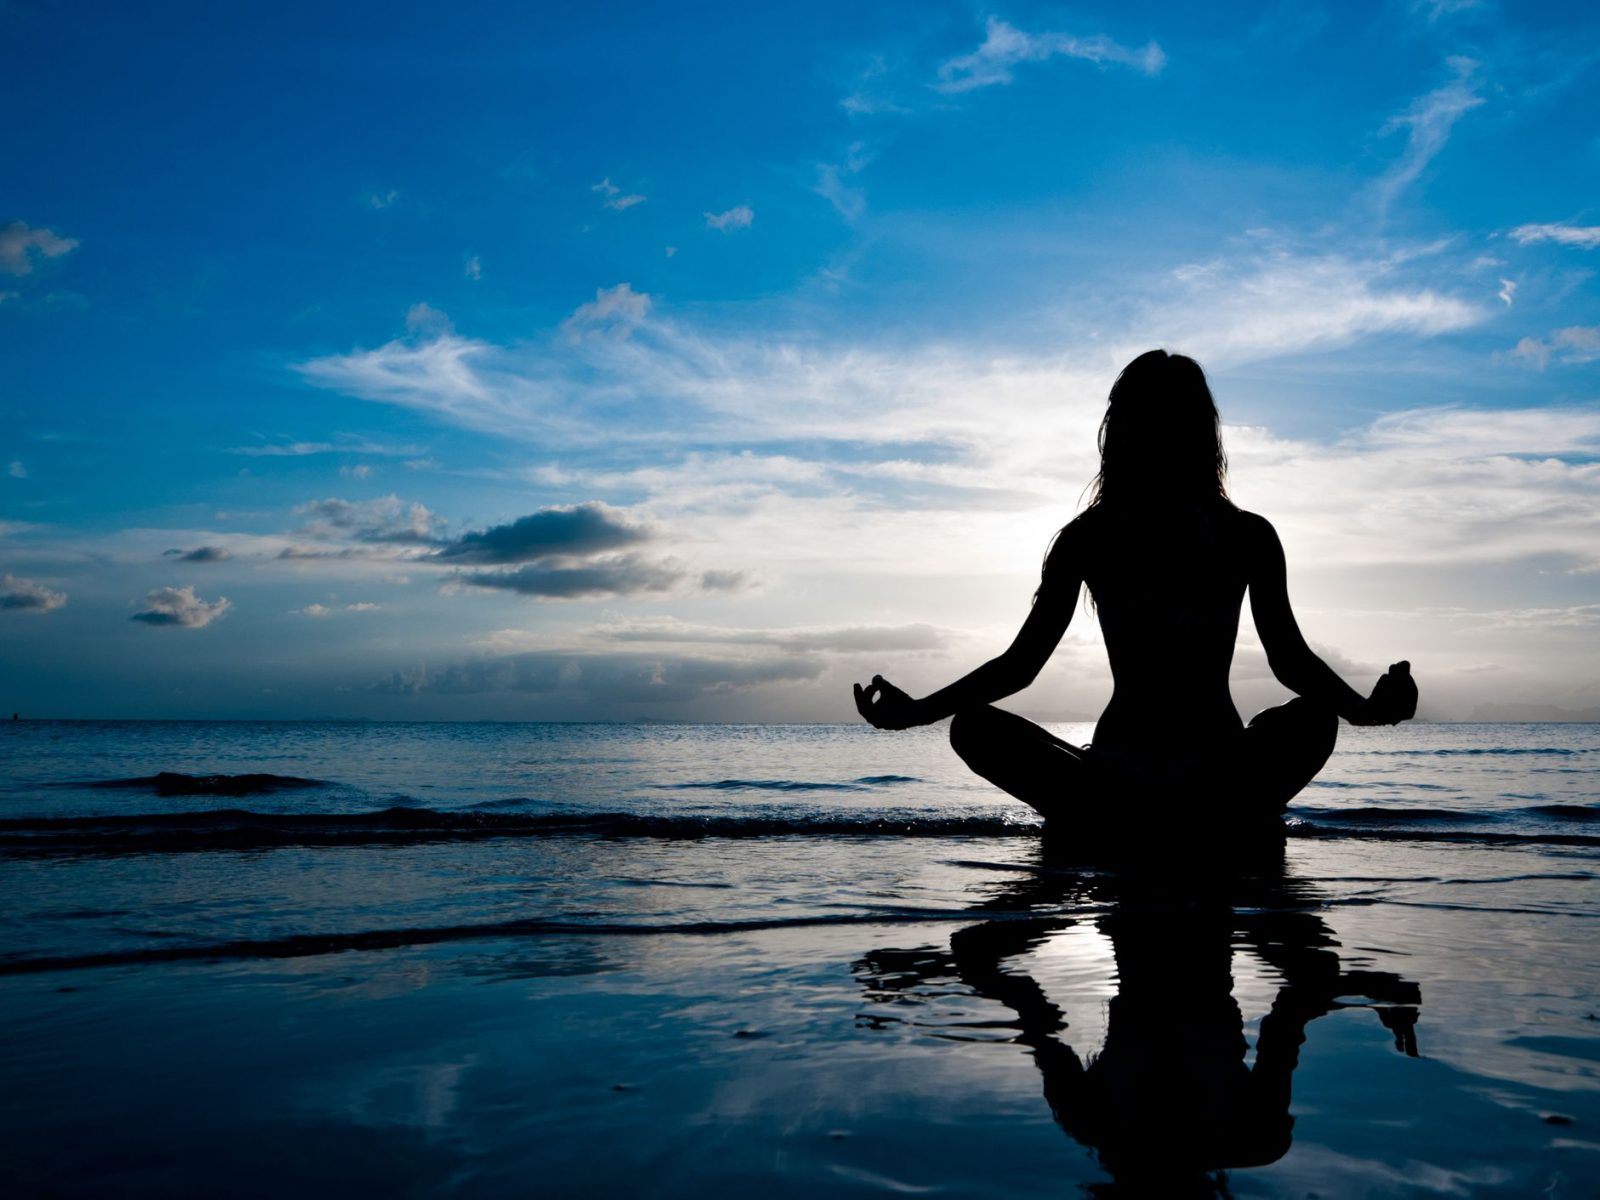 Mindfulness ασκήσεις: 3 τρόποι να εξασκείς το μυαλό σου καθημερινά [pic,vid]